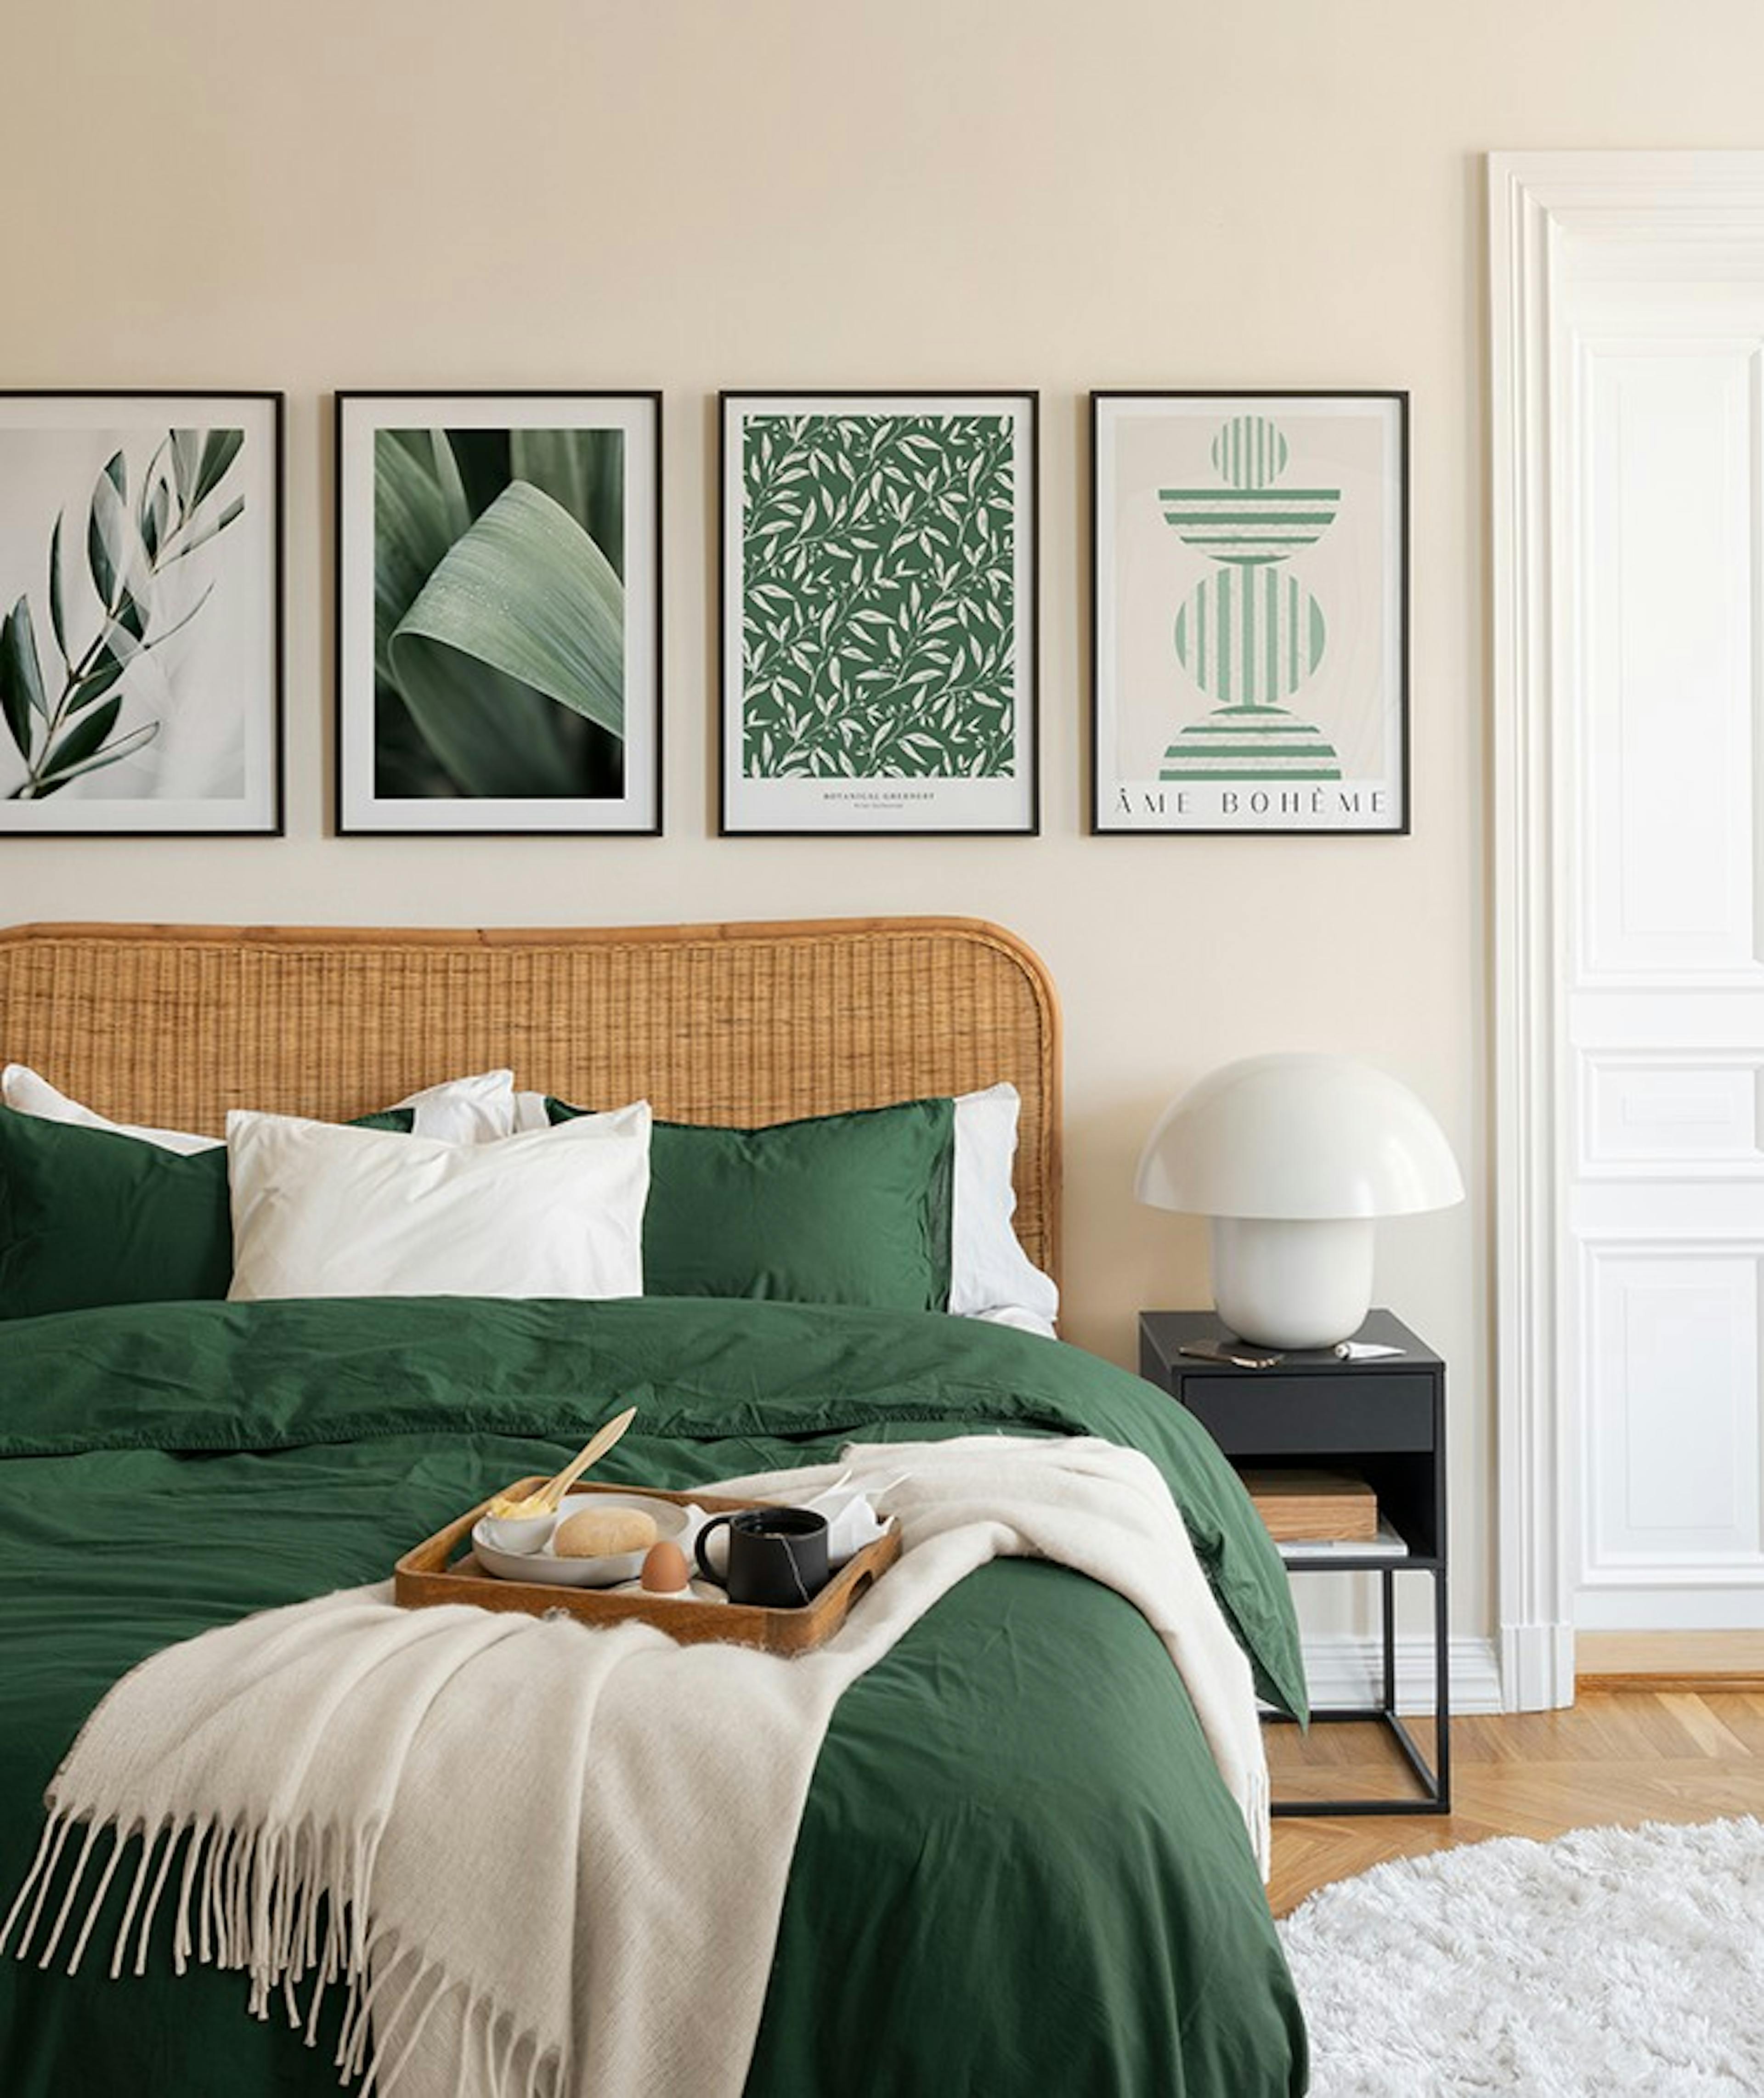 Affiches d'art abstrait et photographies sur le thème vert avec des cadres en bois noirs pour la chambre